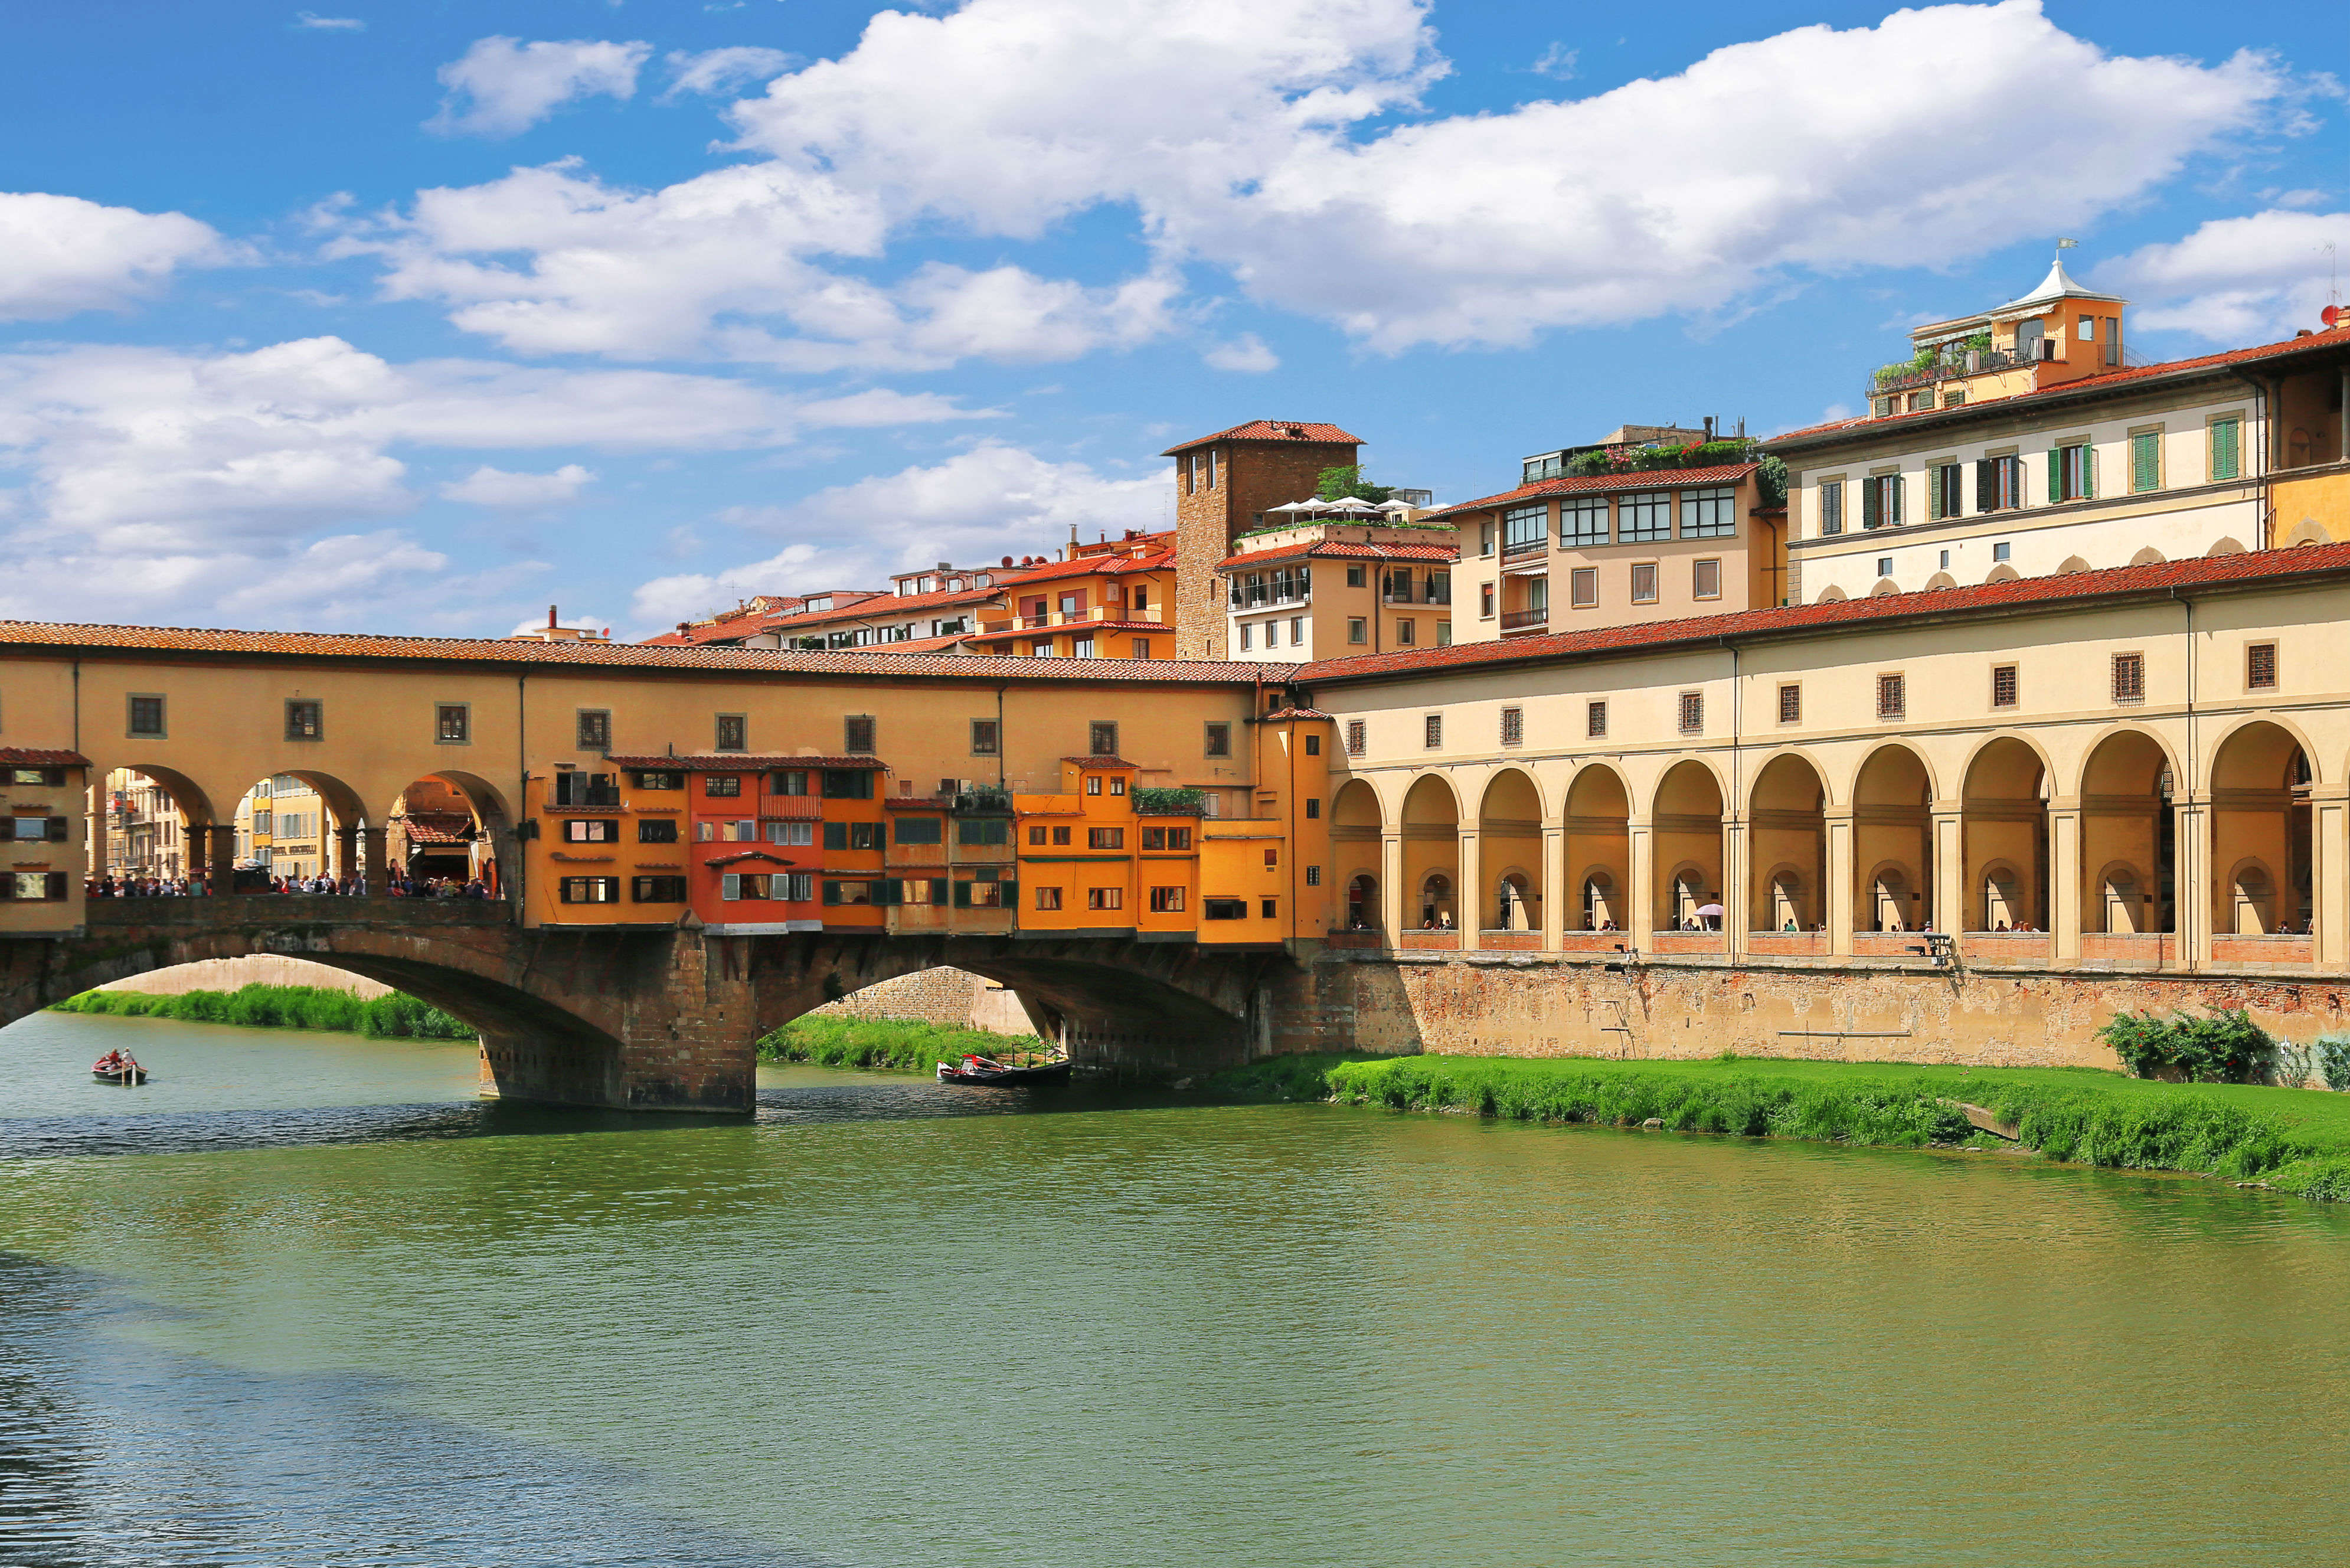 Vasari Corridor – Florence secret corridor of art is soon to be open for public